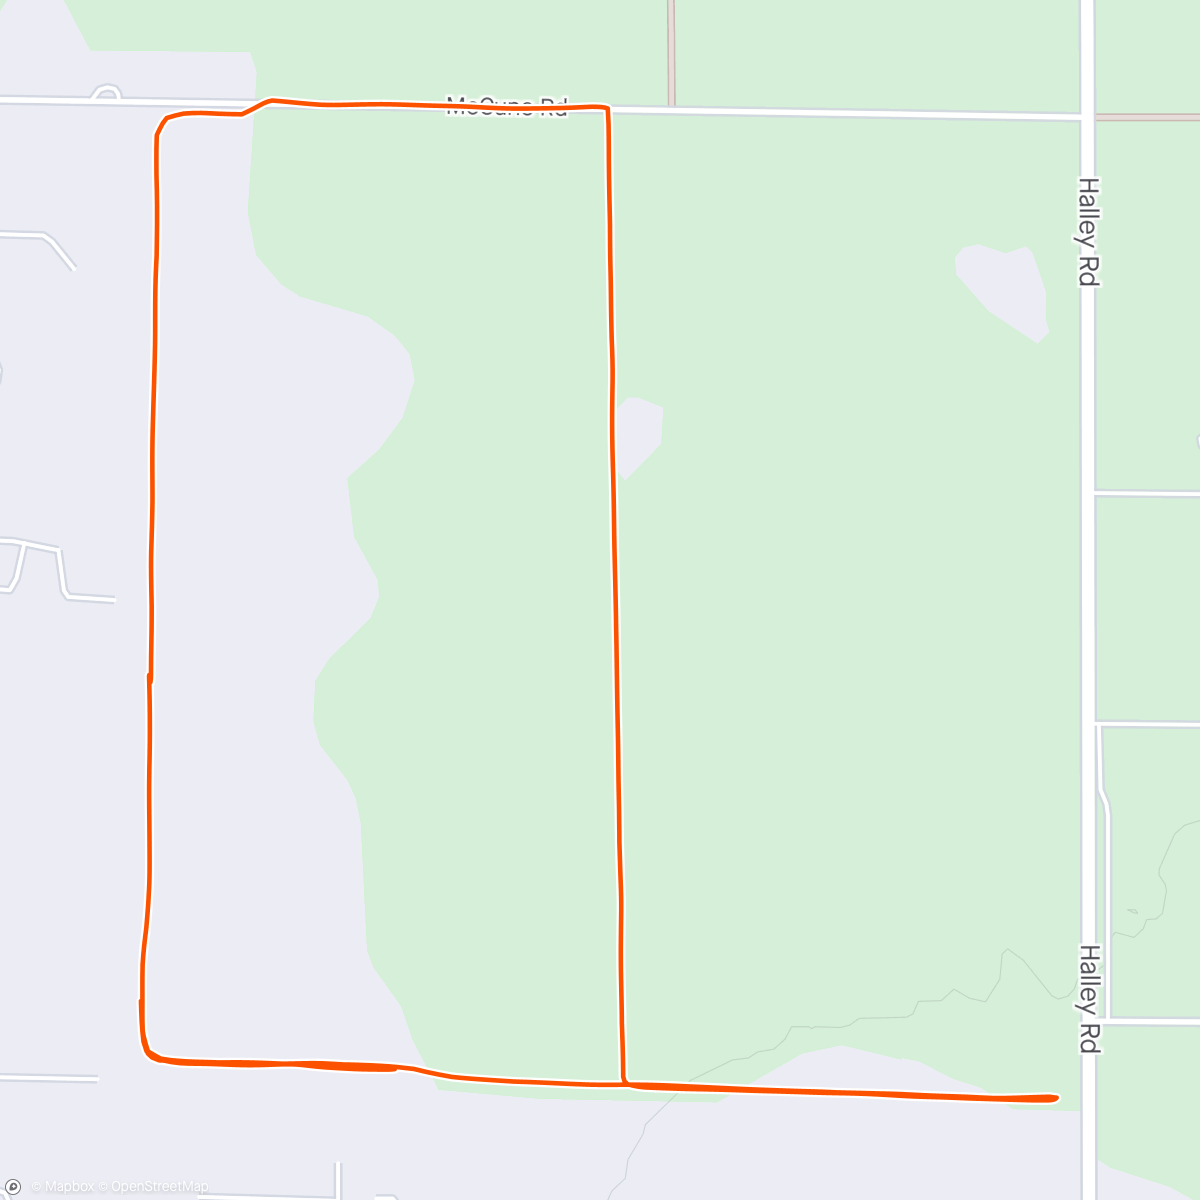 アクティビティ「Morning Walk / Run with Roxy and Essie.  3.0 miles running at 9.0 minute average. 💥」の地図